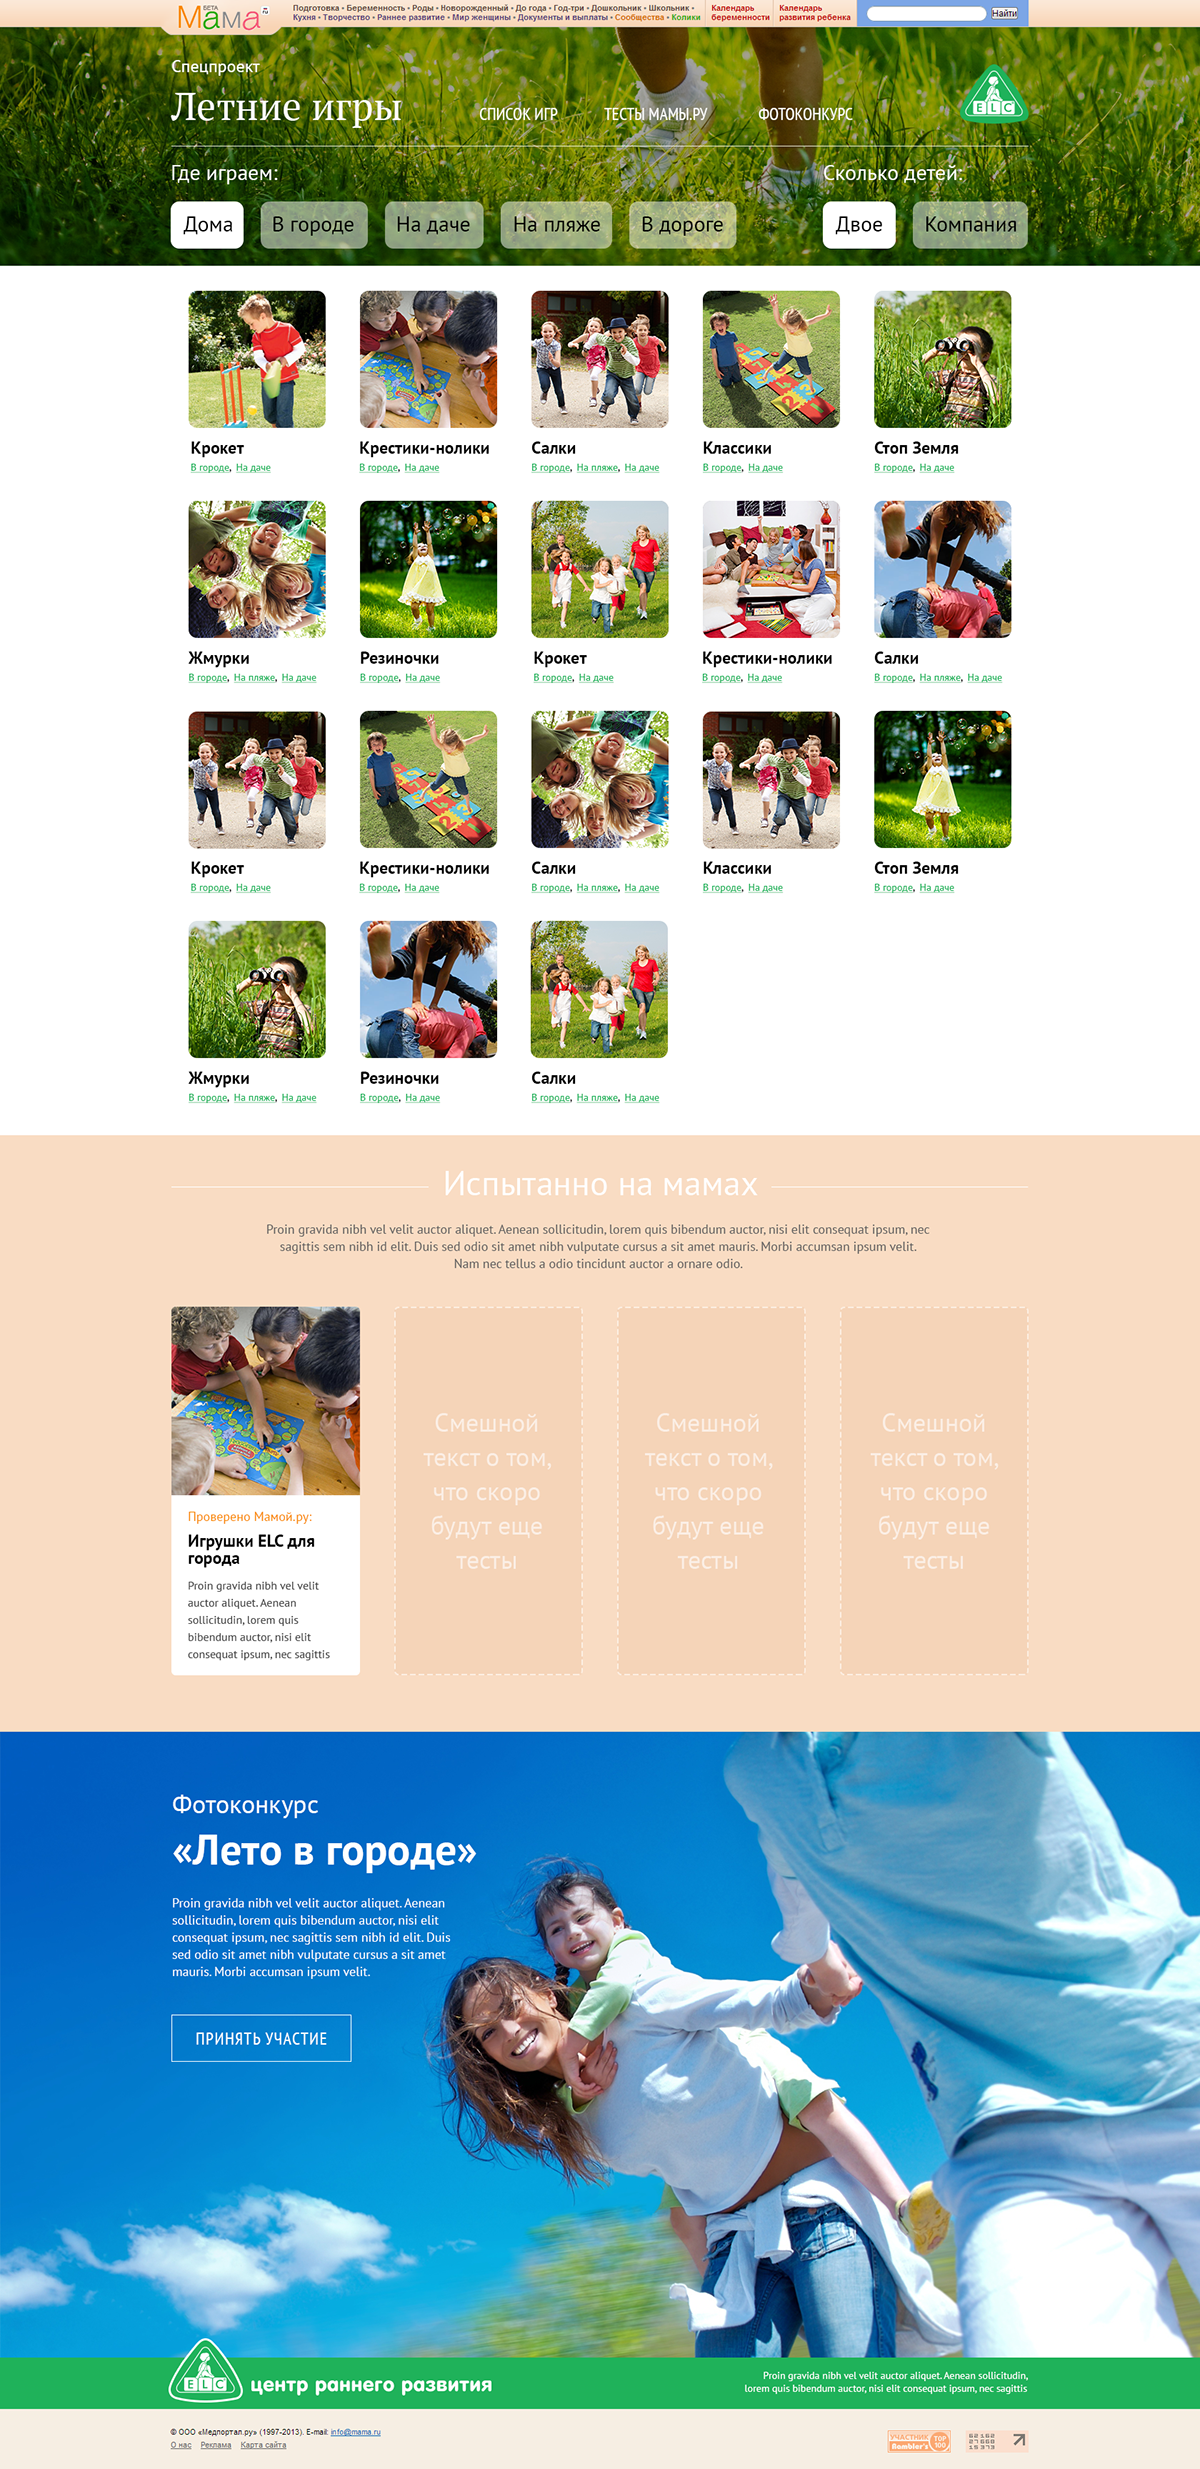 Website advertisement toys children